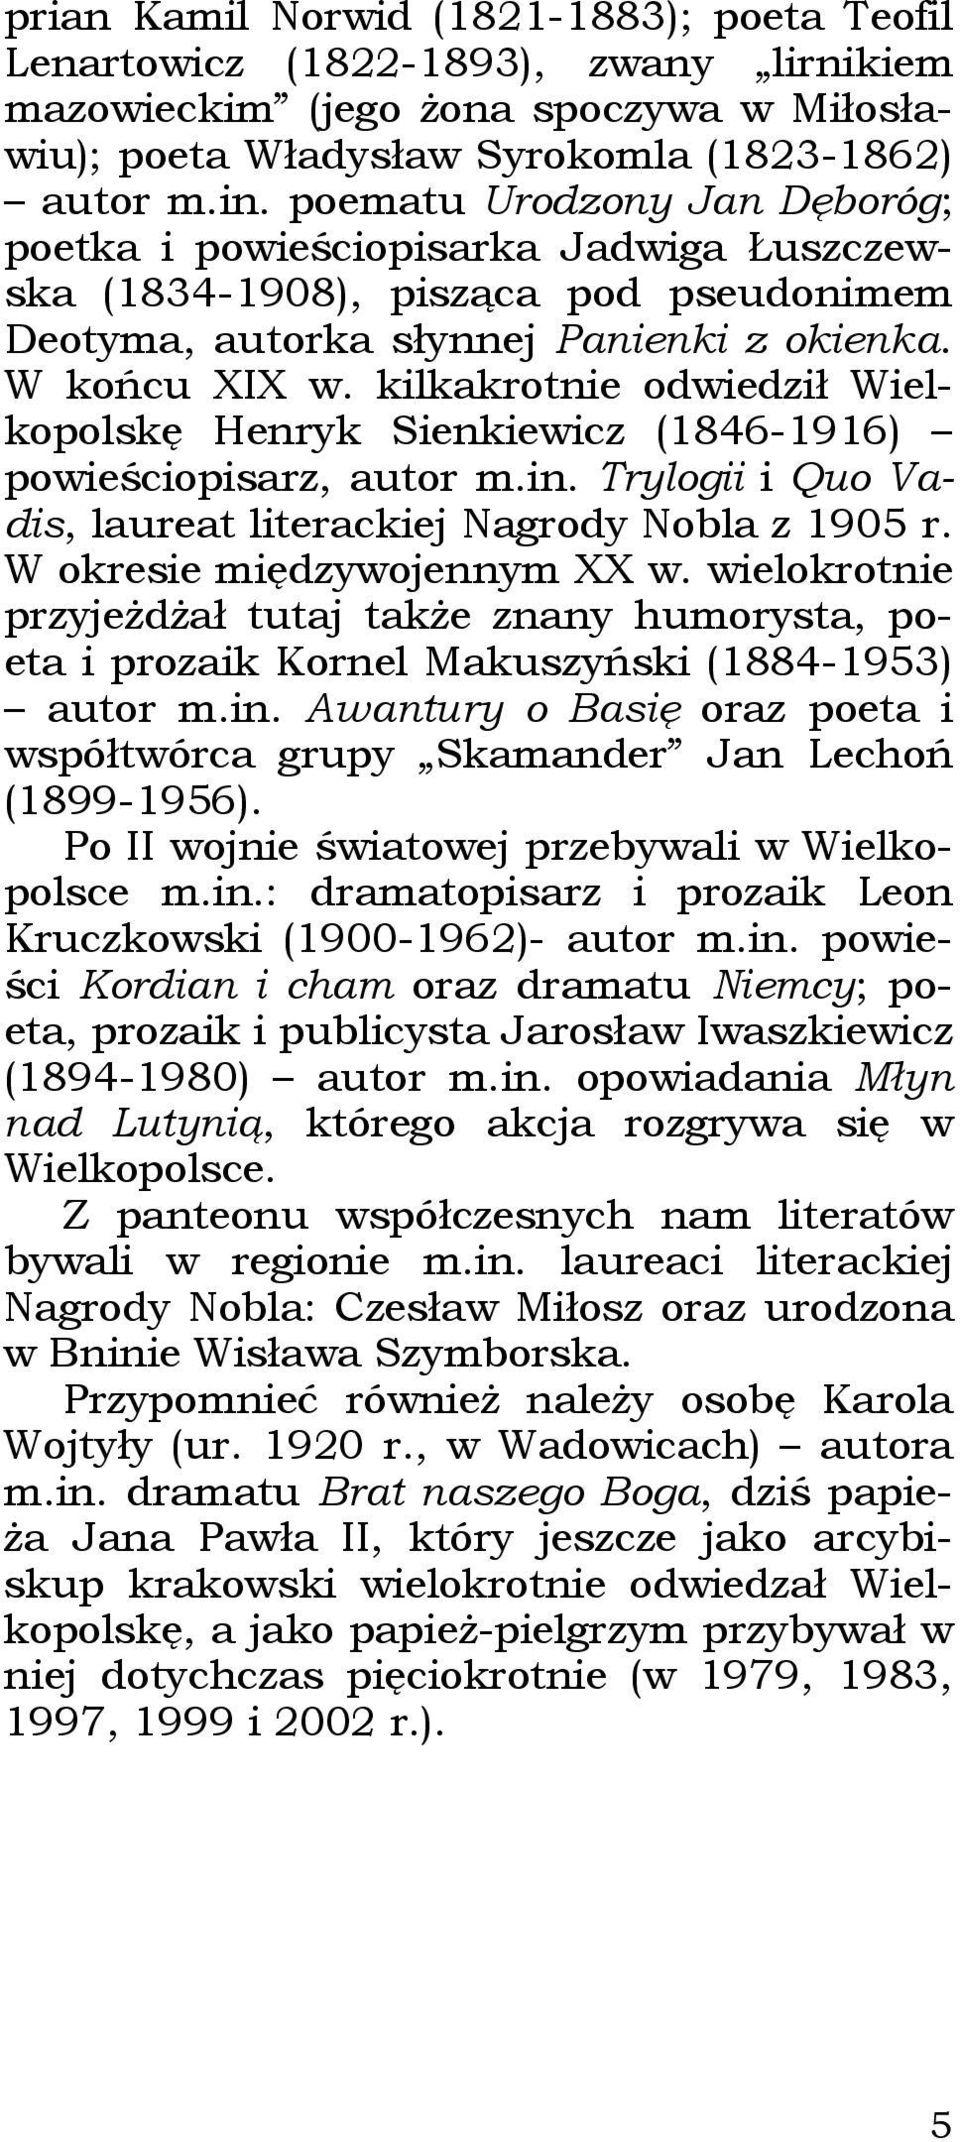 kilkakrotnie odwiedził Wielkopolskę Henryk Sienkiewicz (1846-1916) powieściopisarz, autor m.in. Trylogii i Quo Vadis, laureat literackiej Nagrody Nobla z 1905 r. W okresie międzywojennym XX w.